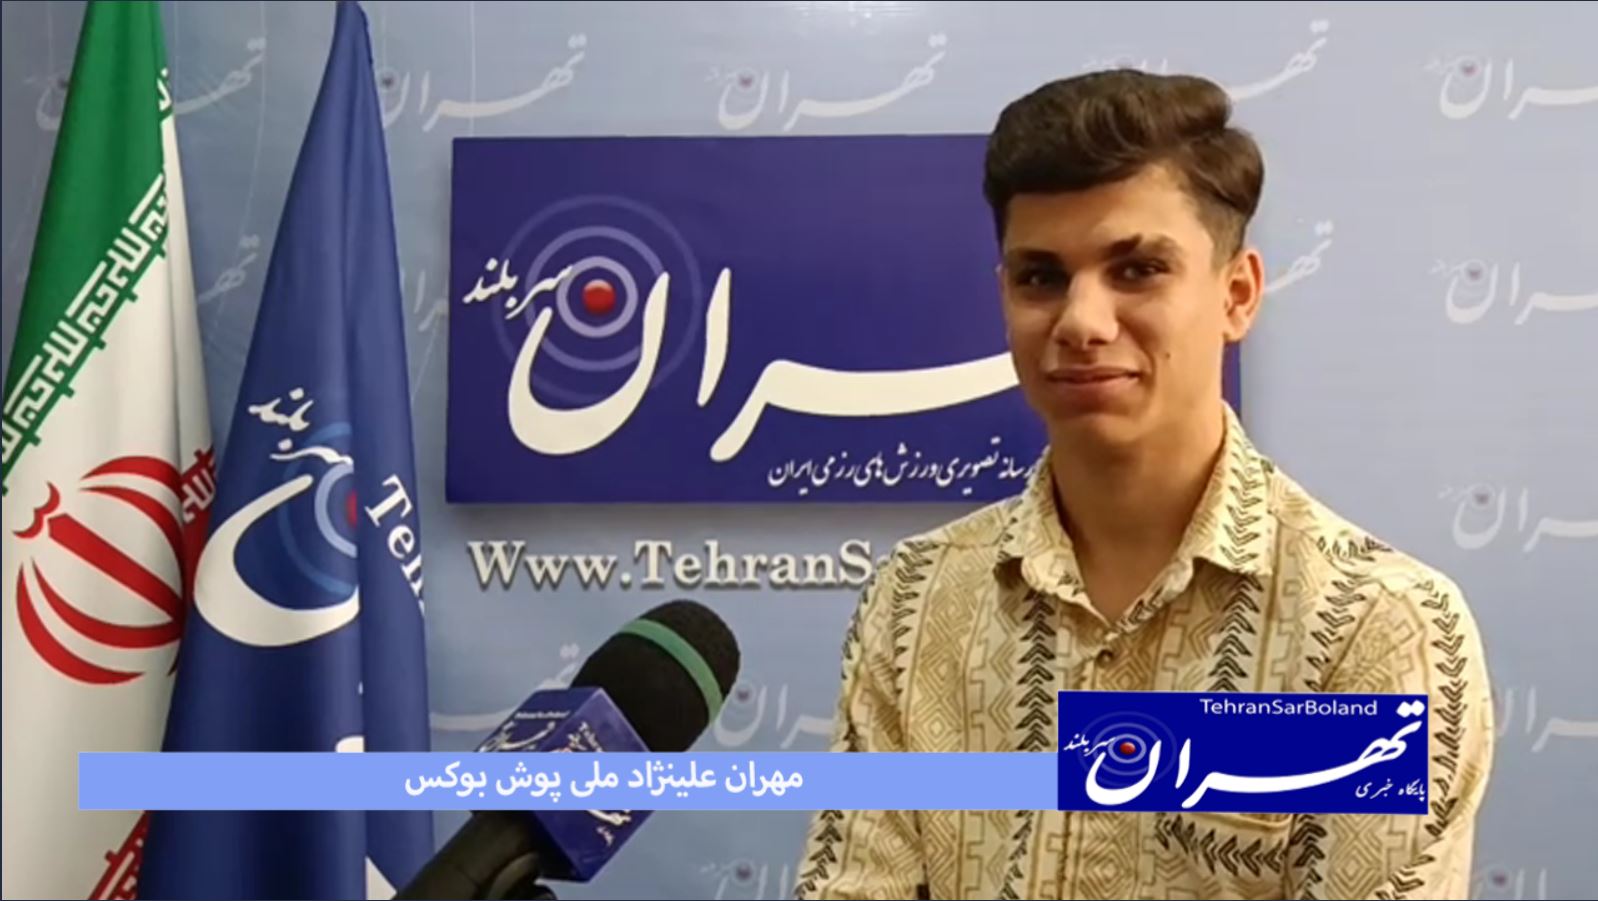 بوکس/مهران علینژاد: در لیست اعزام بودم خدمت سربازی مانع شد!